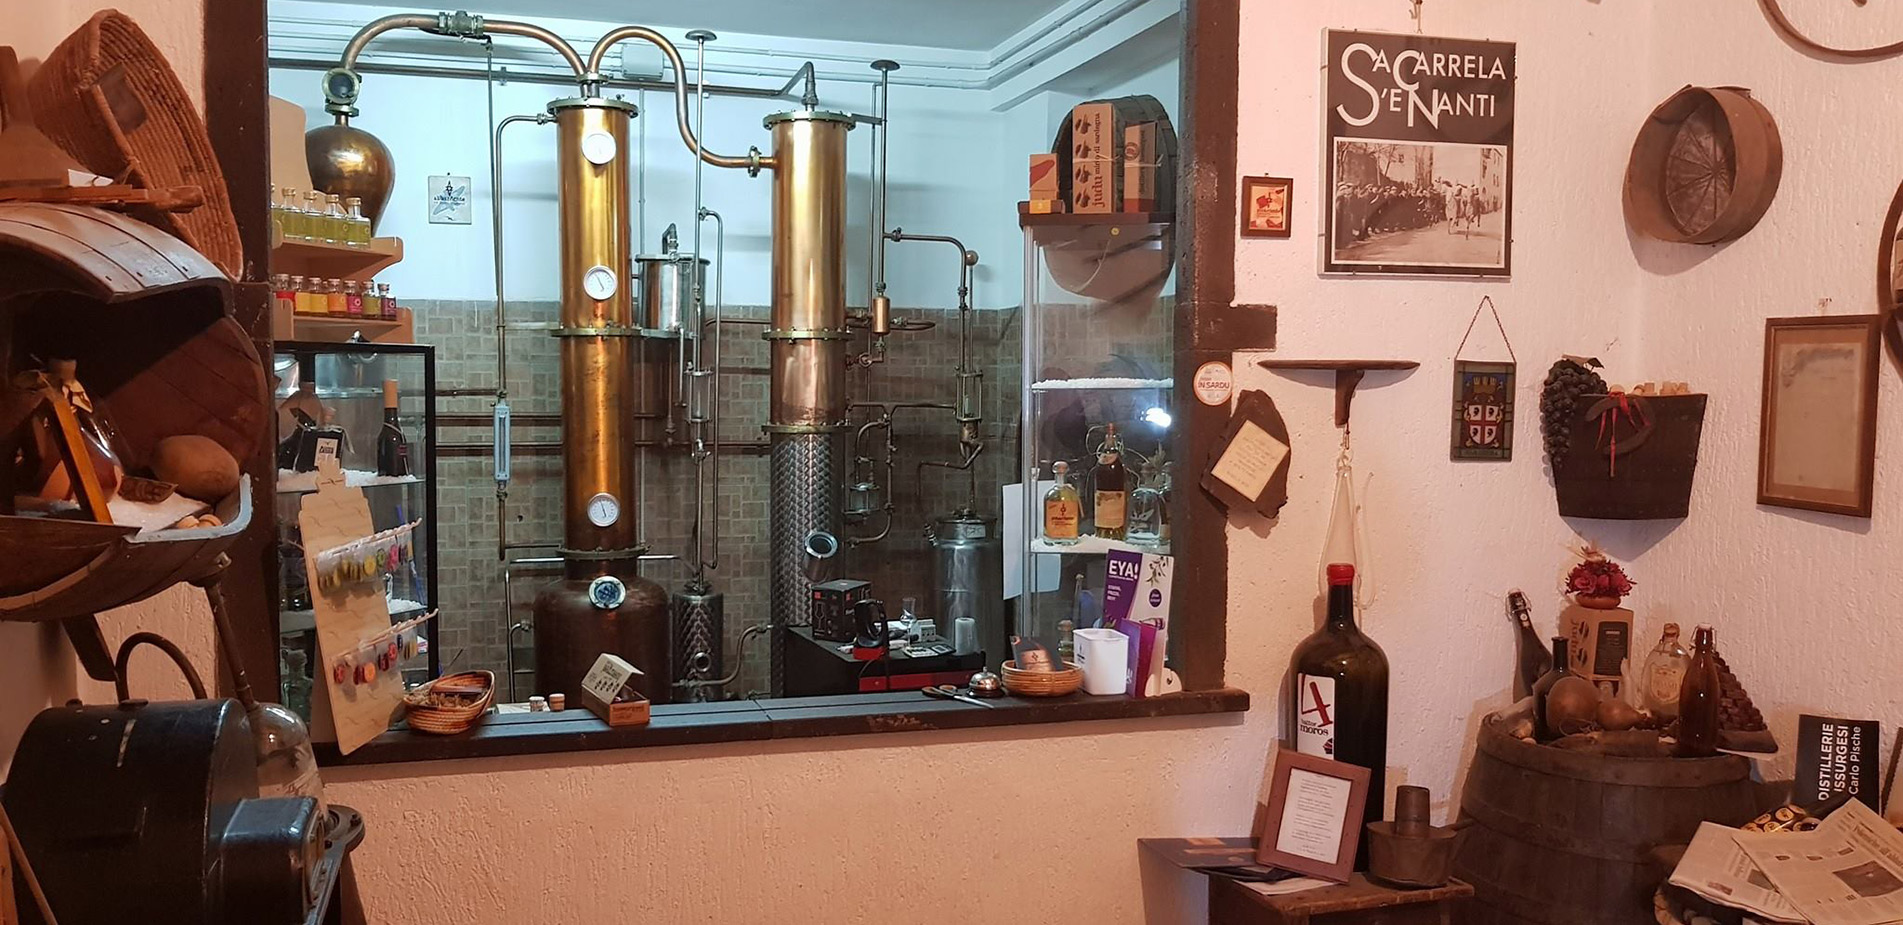 Το ποτό που στα περισσότερα νοικοκυριά της Σαρδηνίας εξακολουθεί να παράγεται παράνομα